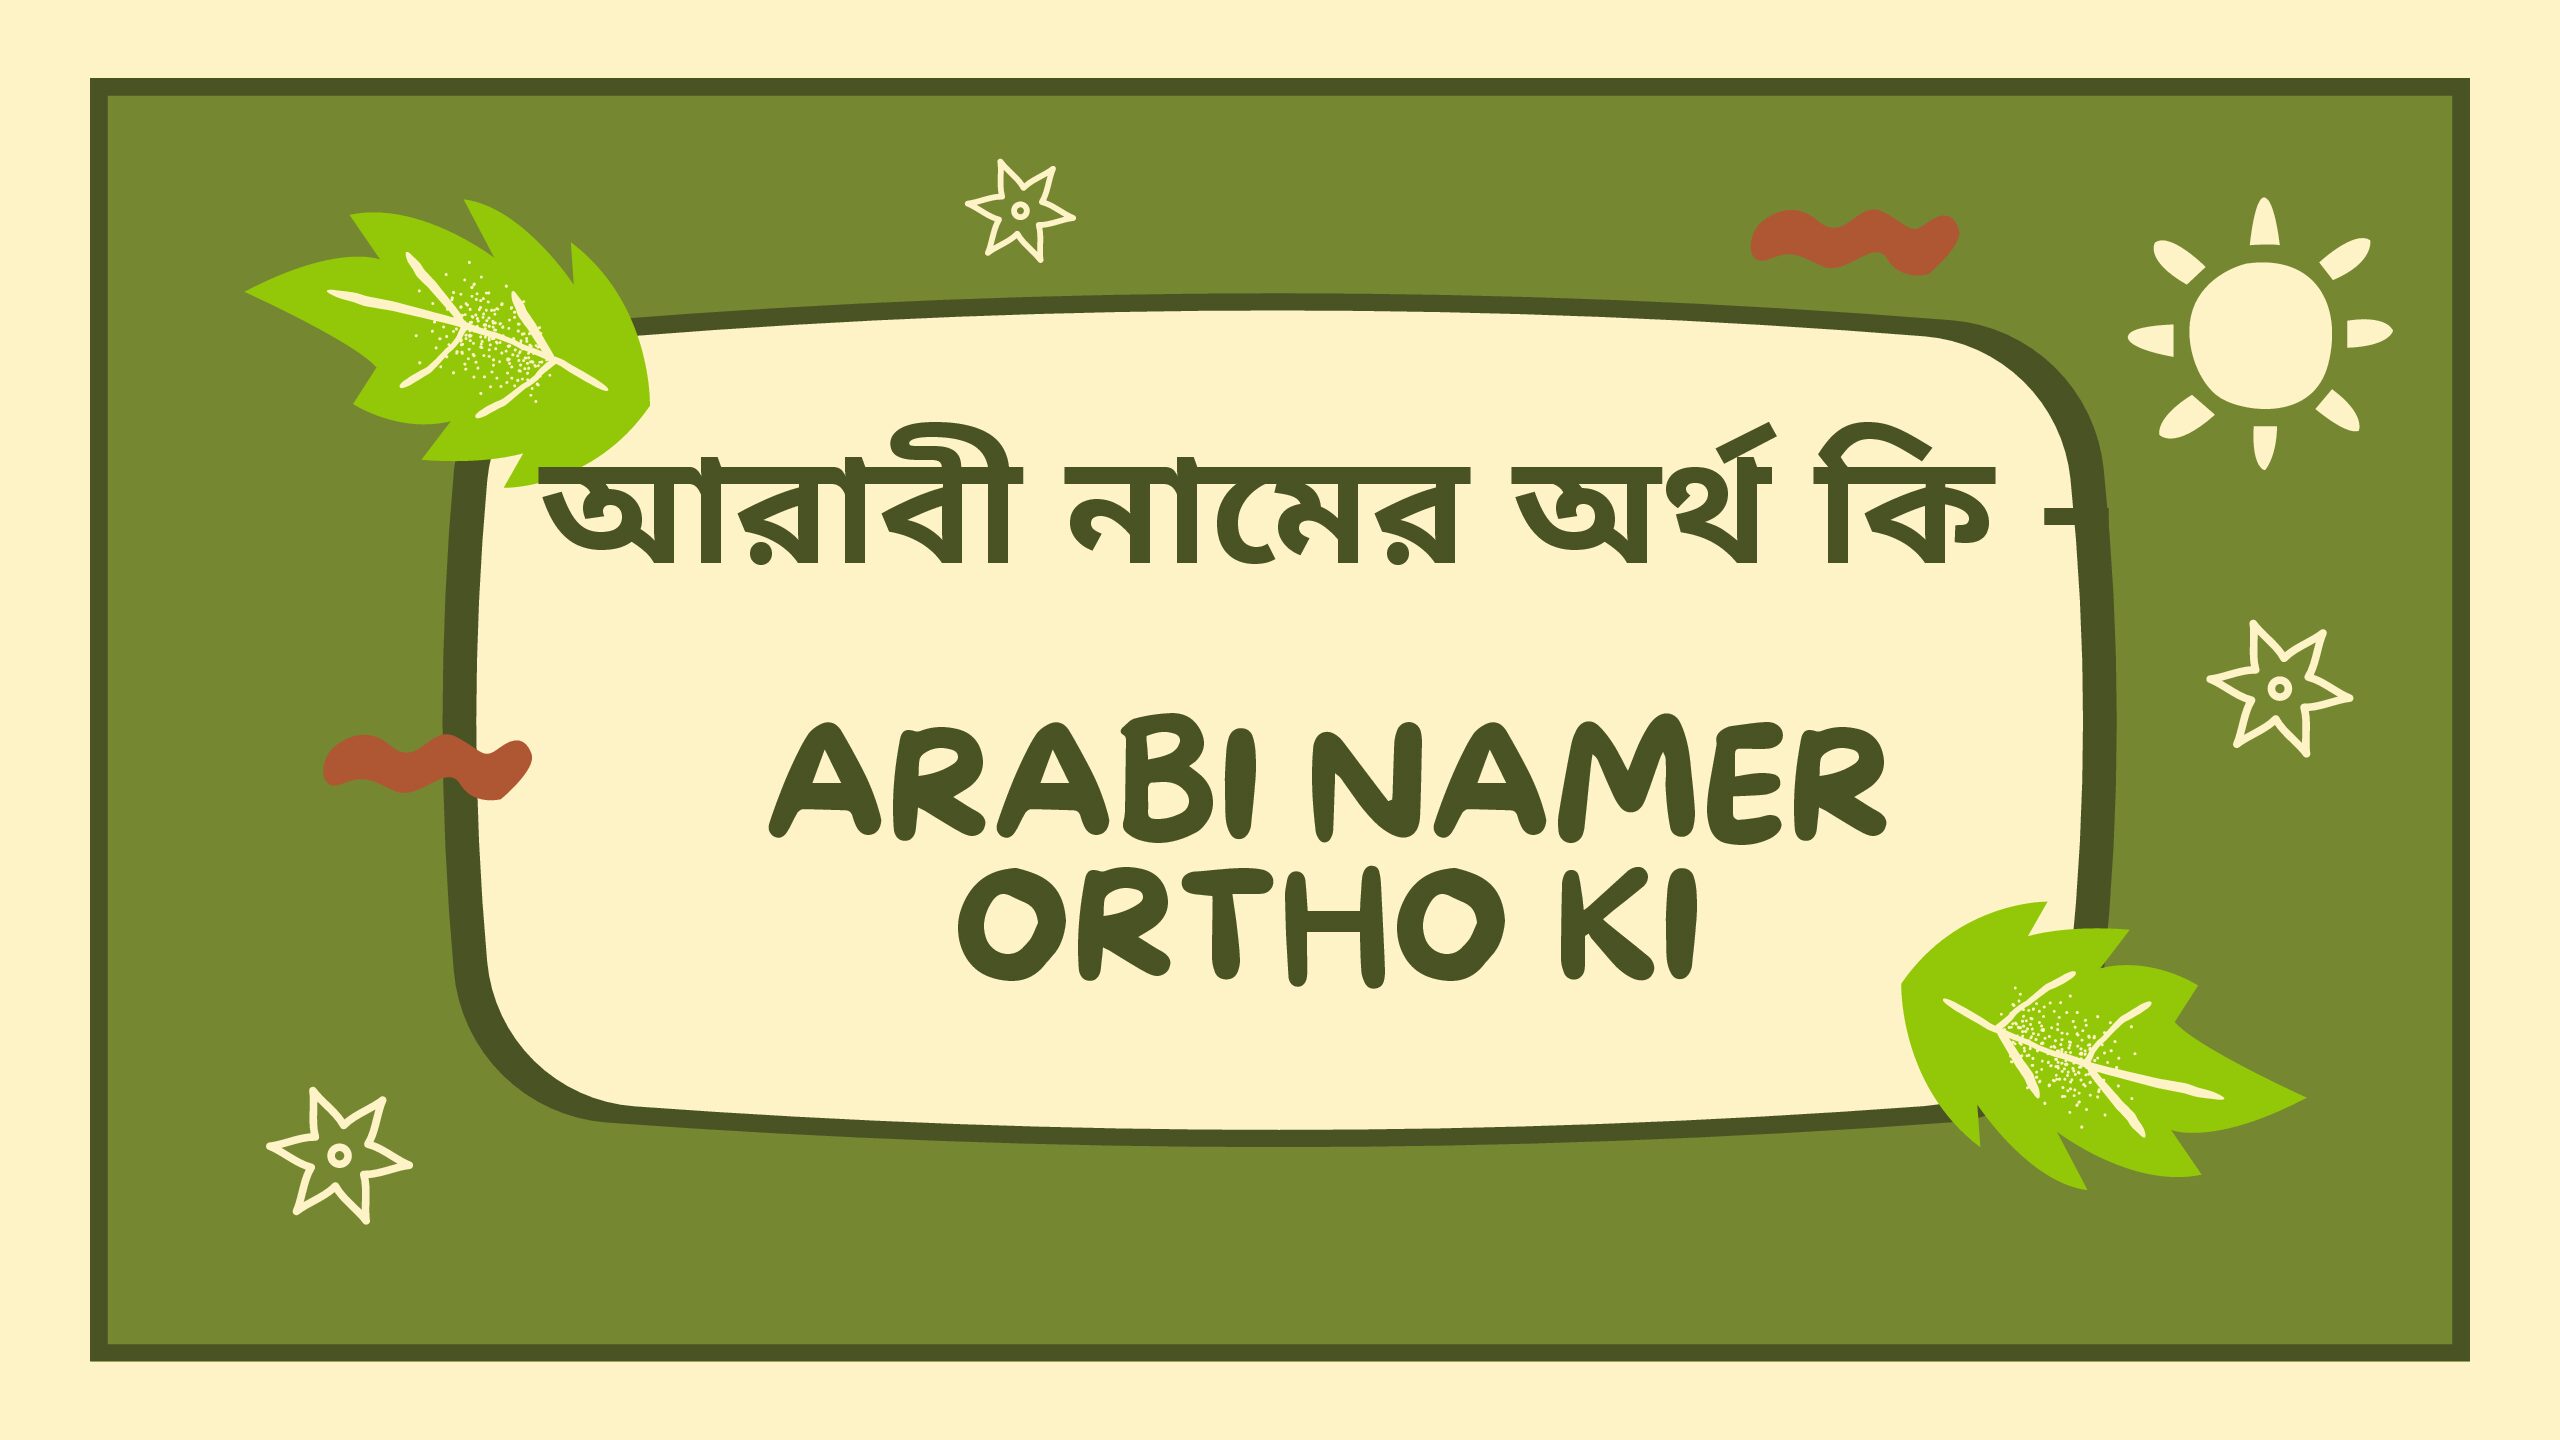 আরাবী নামের অর্থ কি – Arabi namer ortho ki